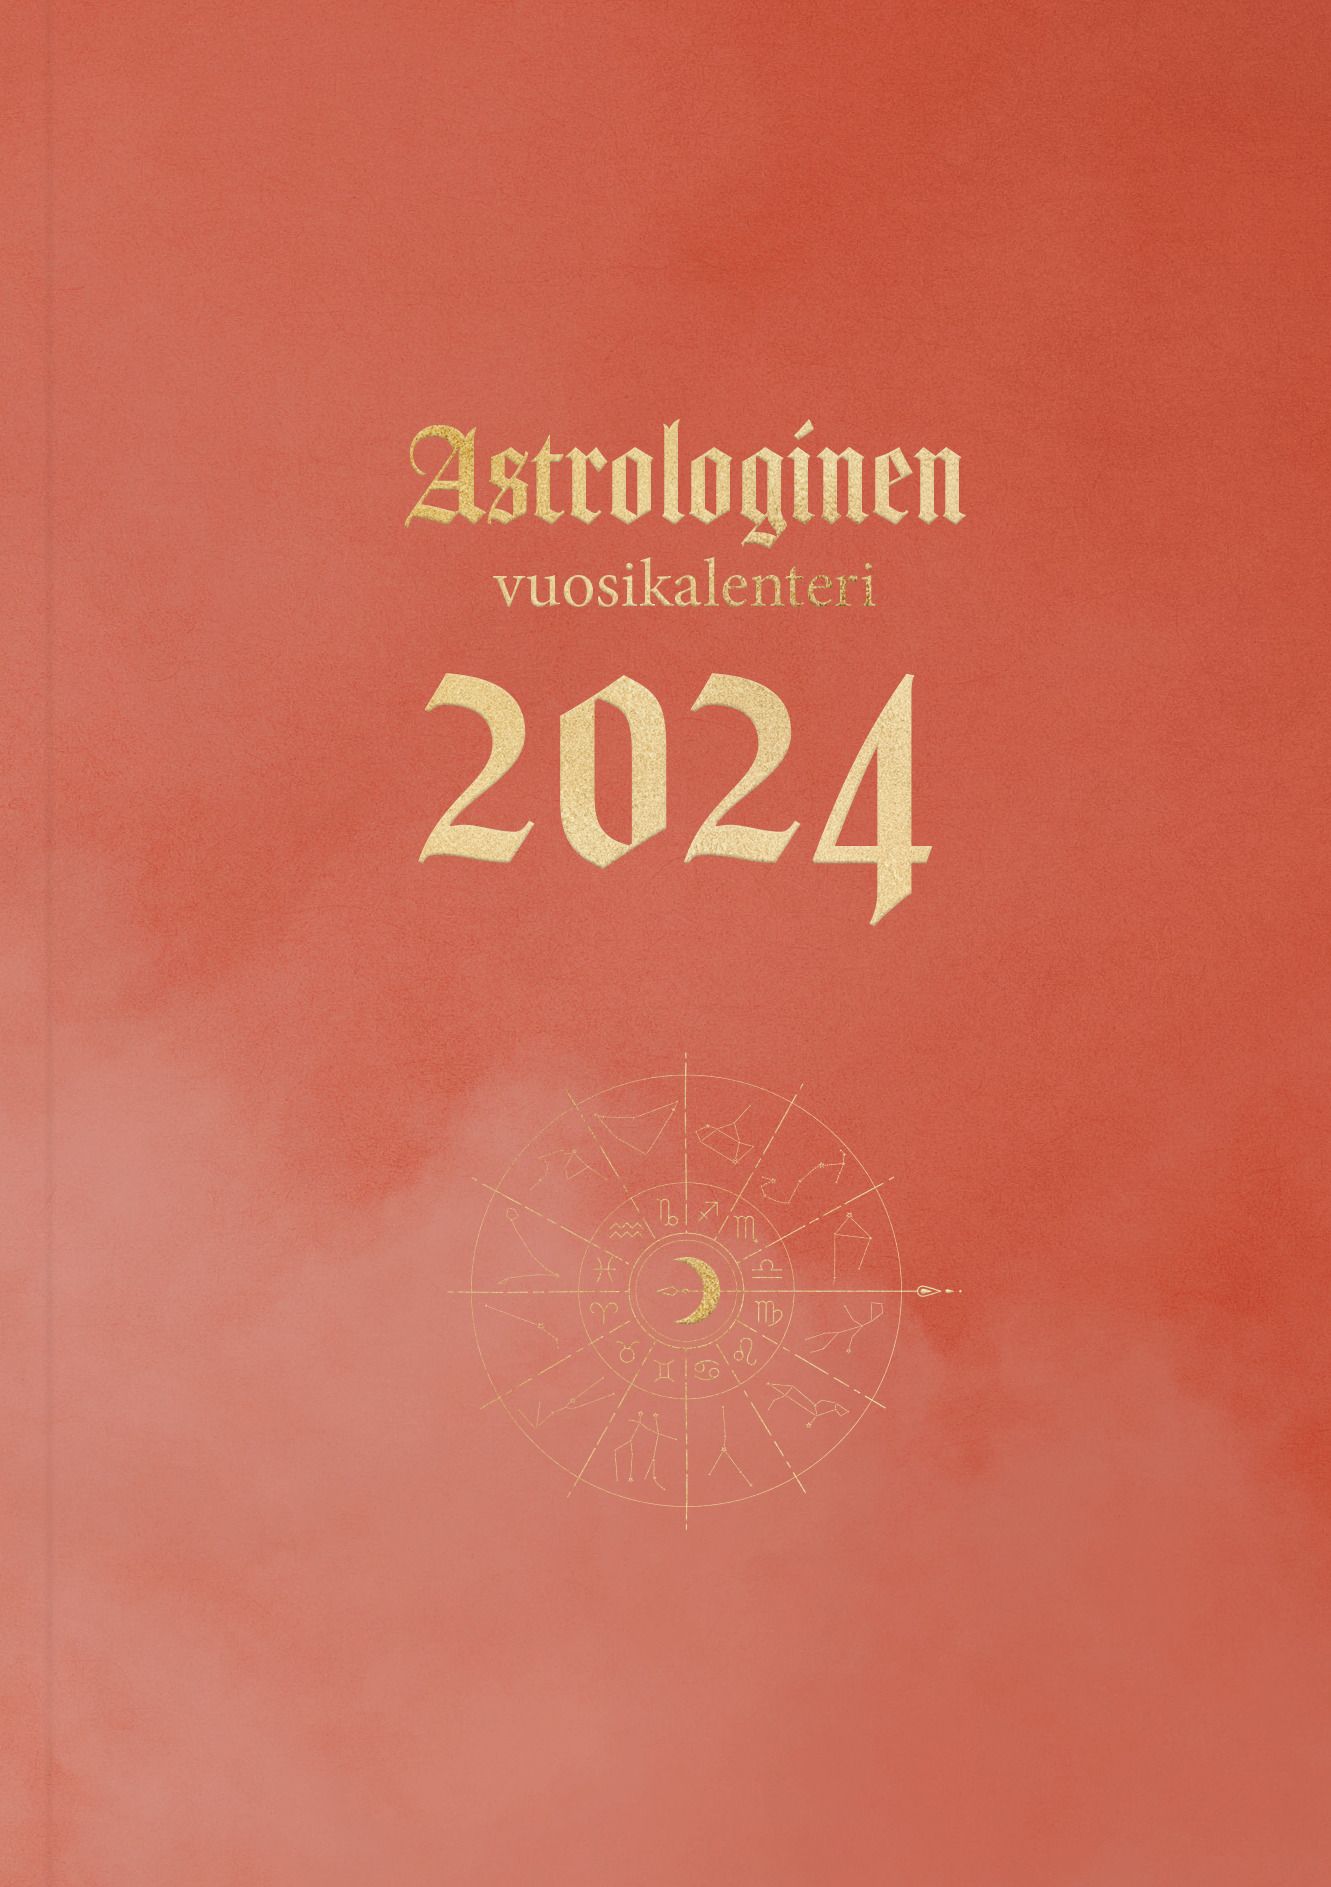 Veera Tiiva : Astrologinen vuosikalenteri 2024